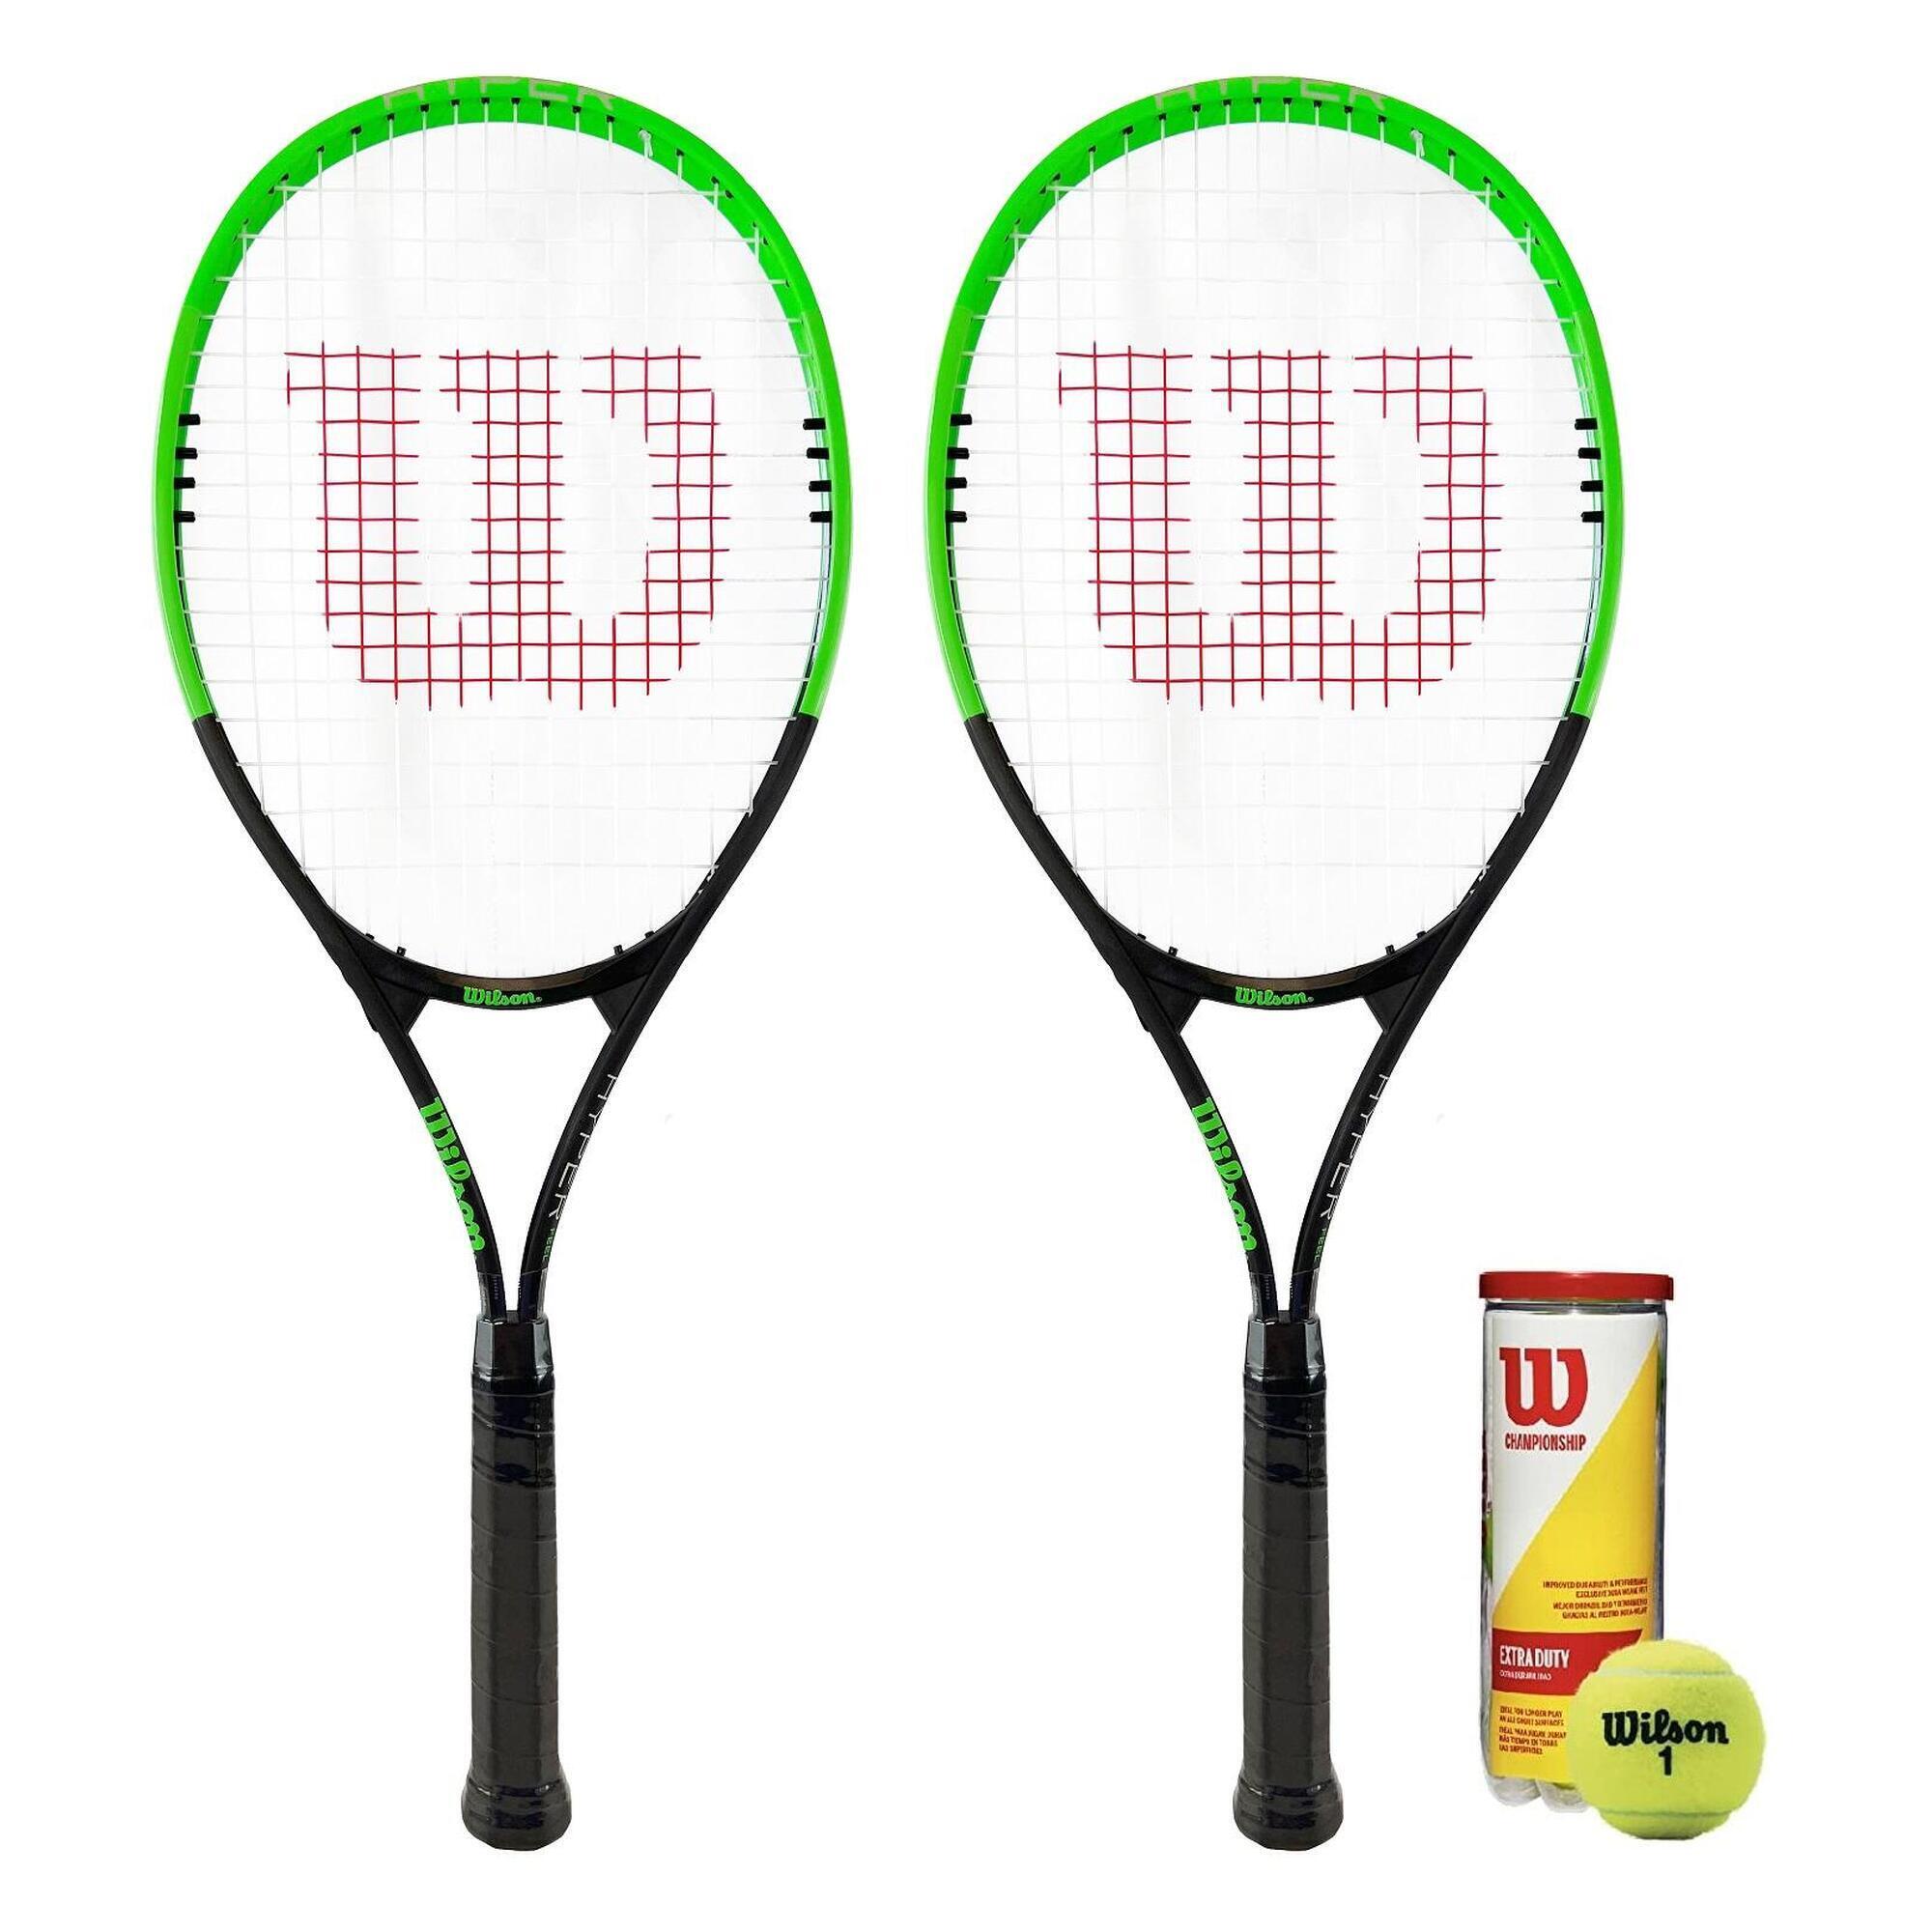 WILSON Wilson Hyper Feel 2 Player Tennis Racket Set Inc 3 Tennis Balls